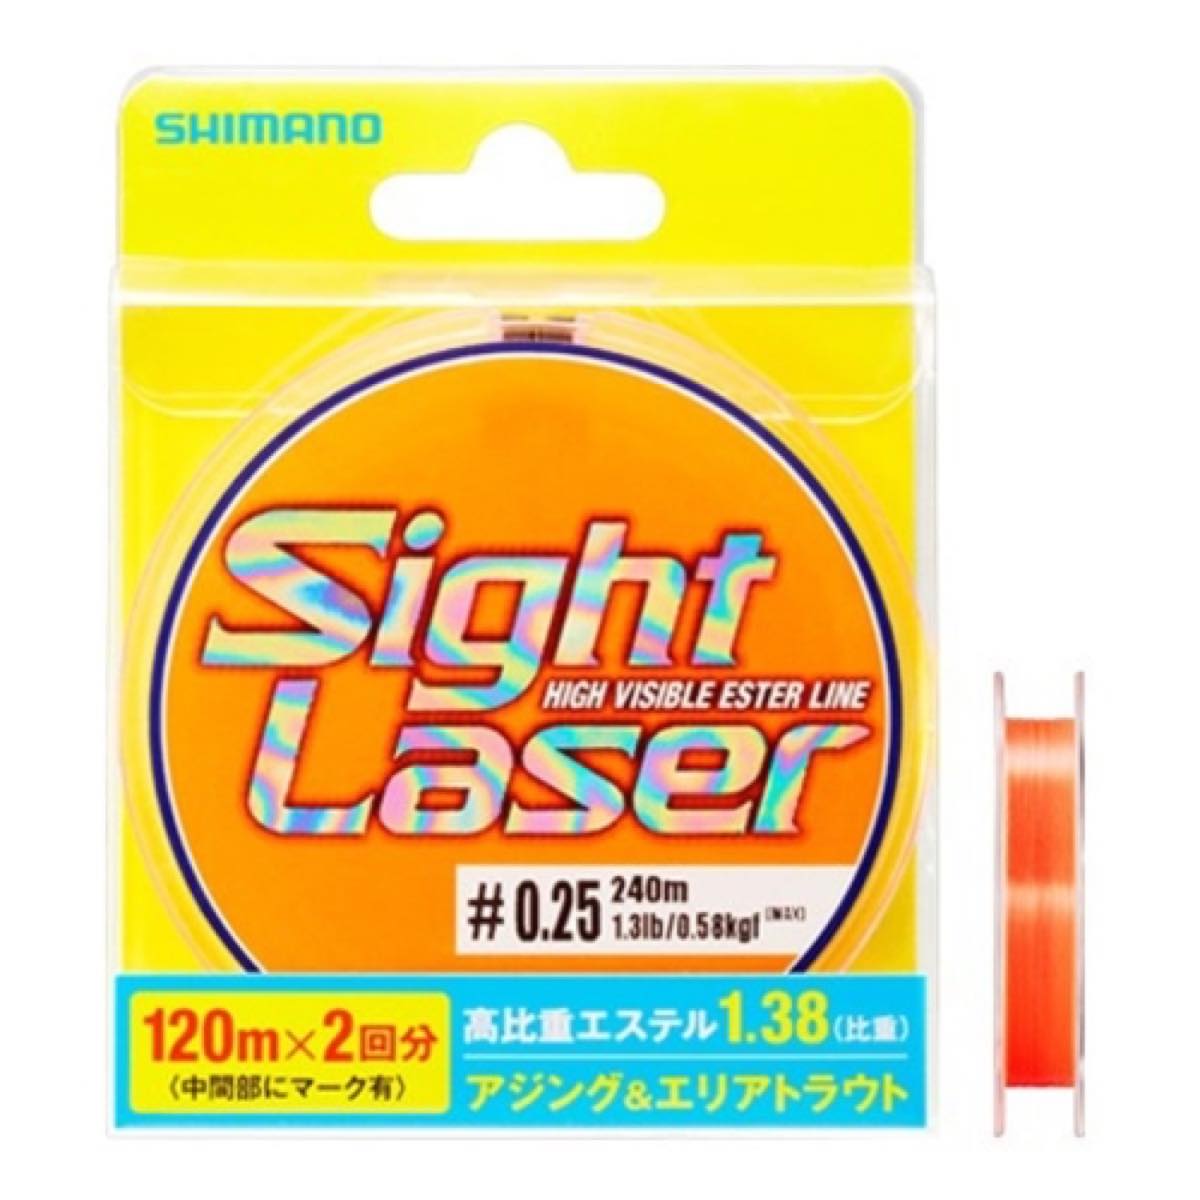 シマノ(SHIMANO) サイトレーザーEX エステル 240m CL-L75Q 0.25号 サイトオレンジ ネコポス(メール便)対象商品